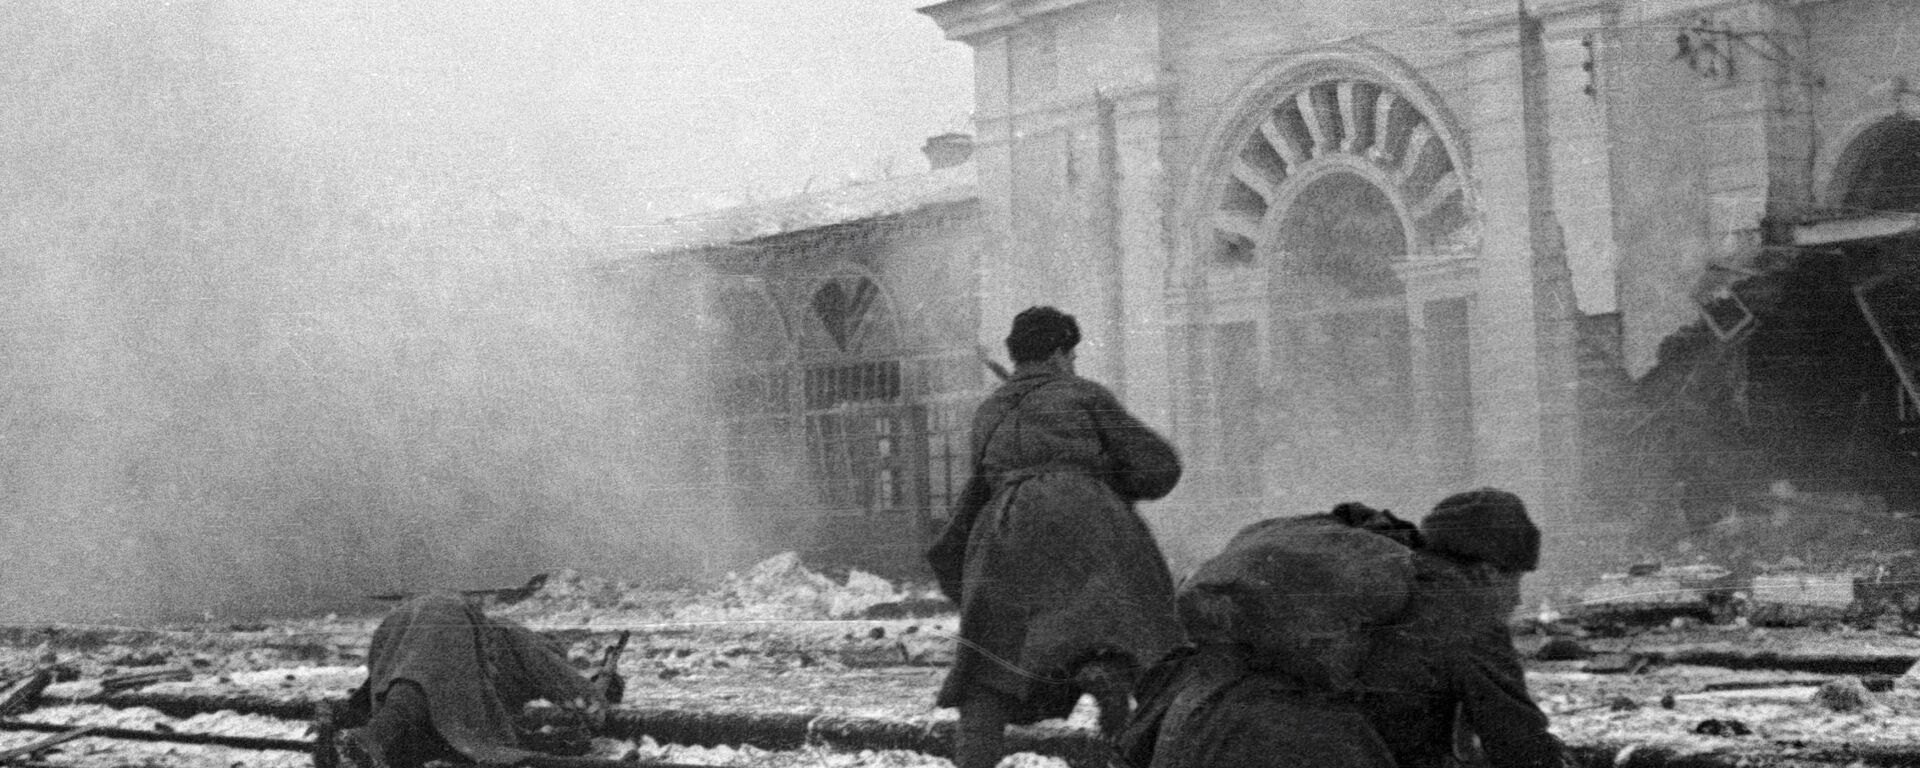 Sovjetski vojnici se bore protiv nemačkih okupatora na stanici grada Vorošilovska (današnji Stavropolj), Drugi svetski rat. - Sputnik Srbija, 1920, 07.05.2020